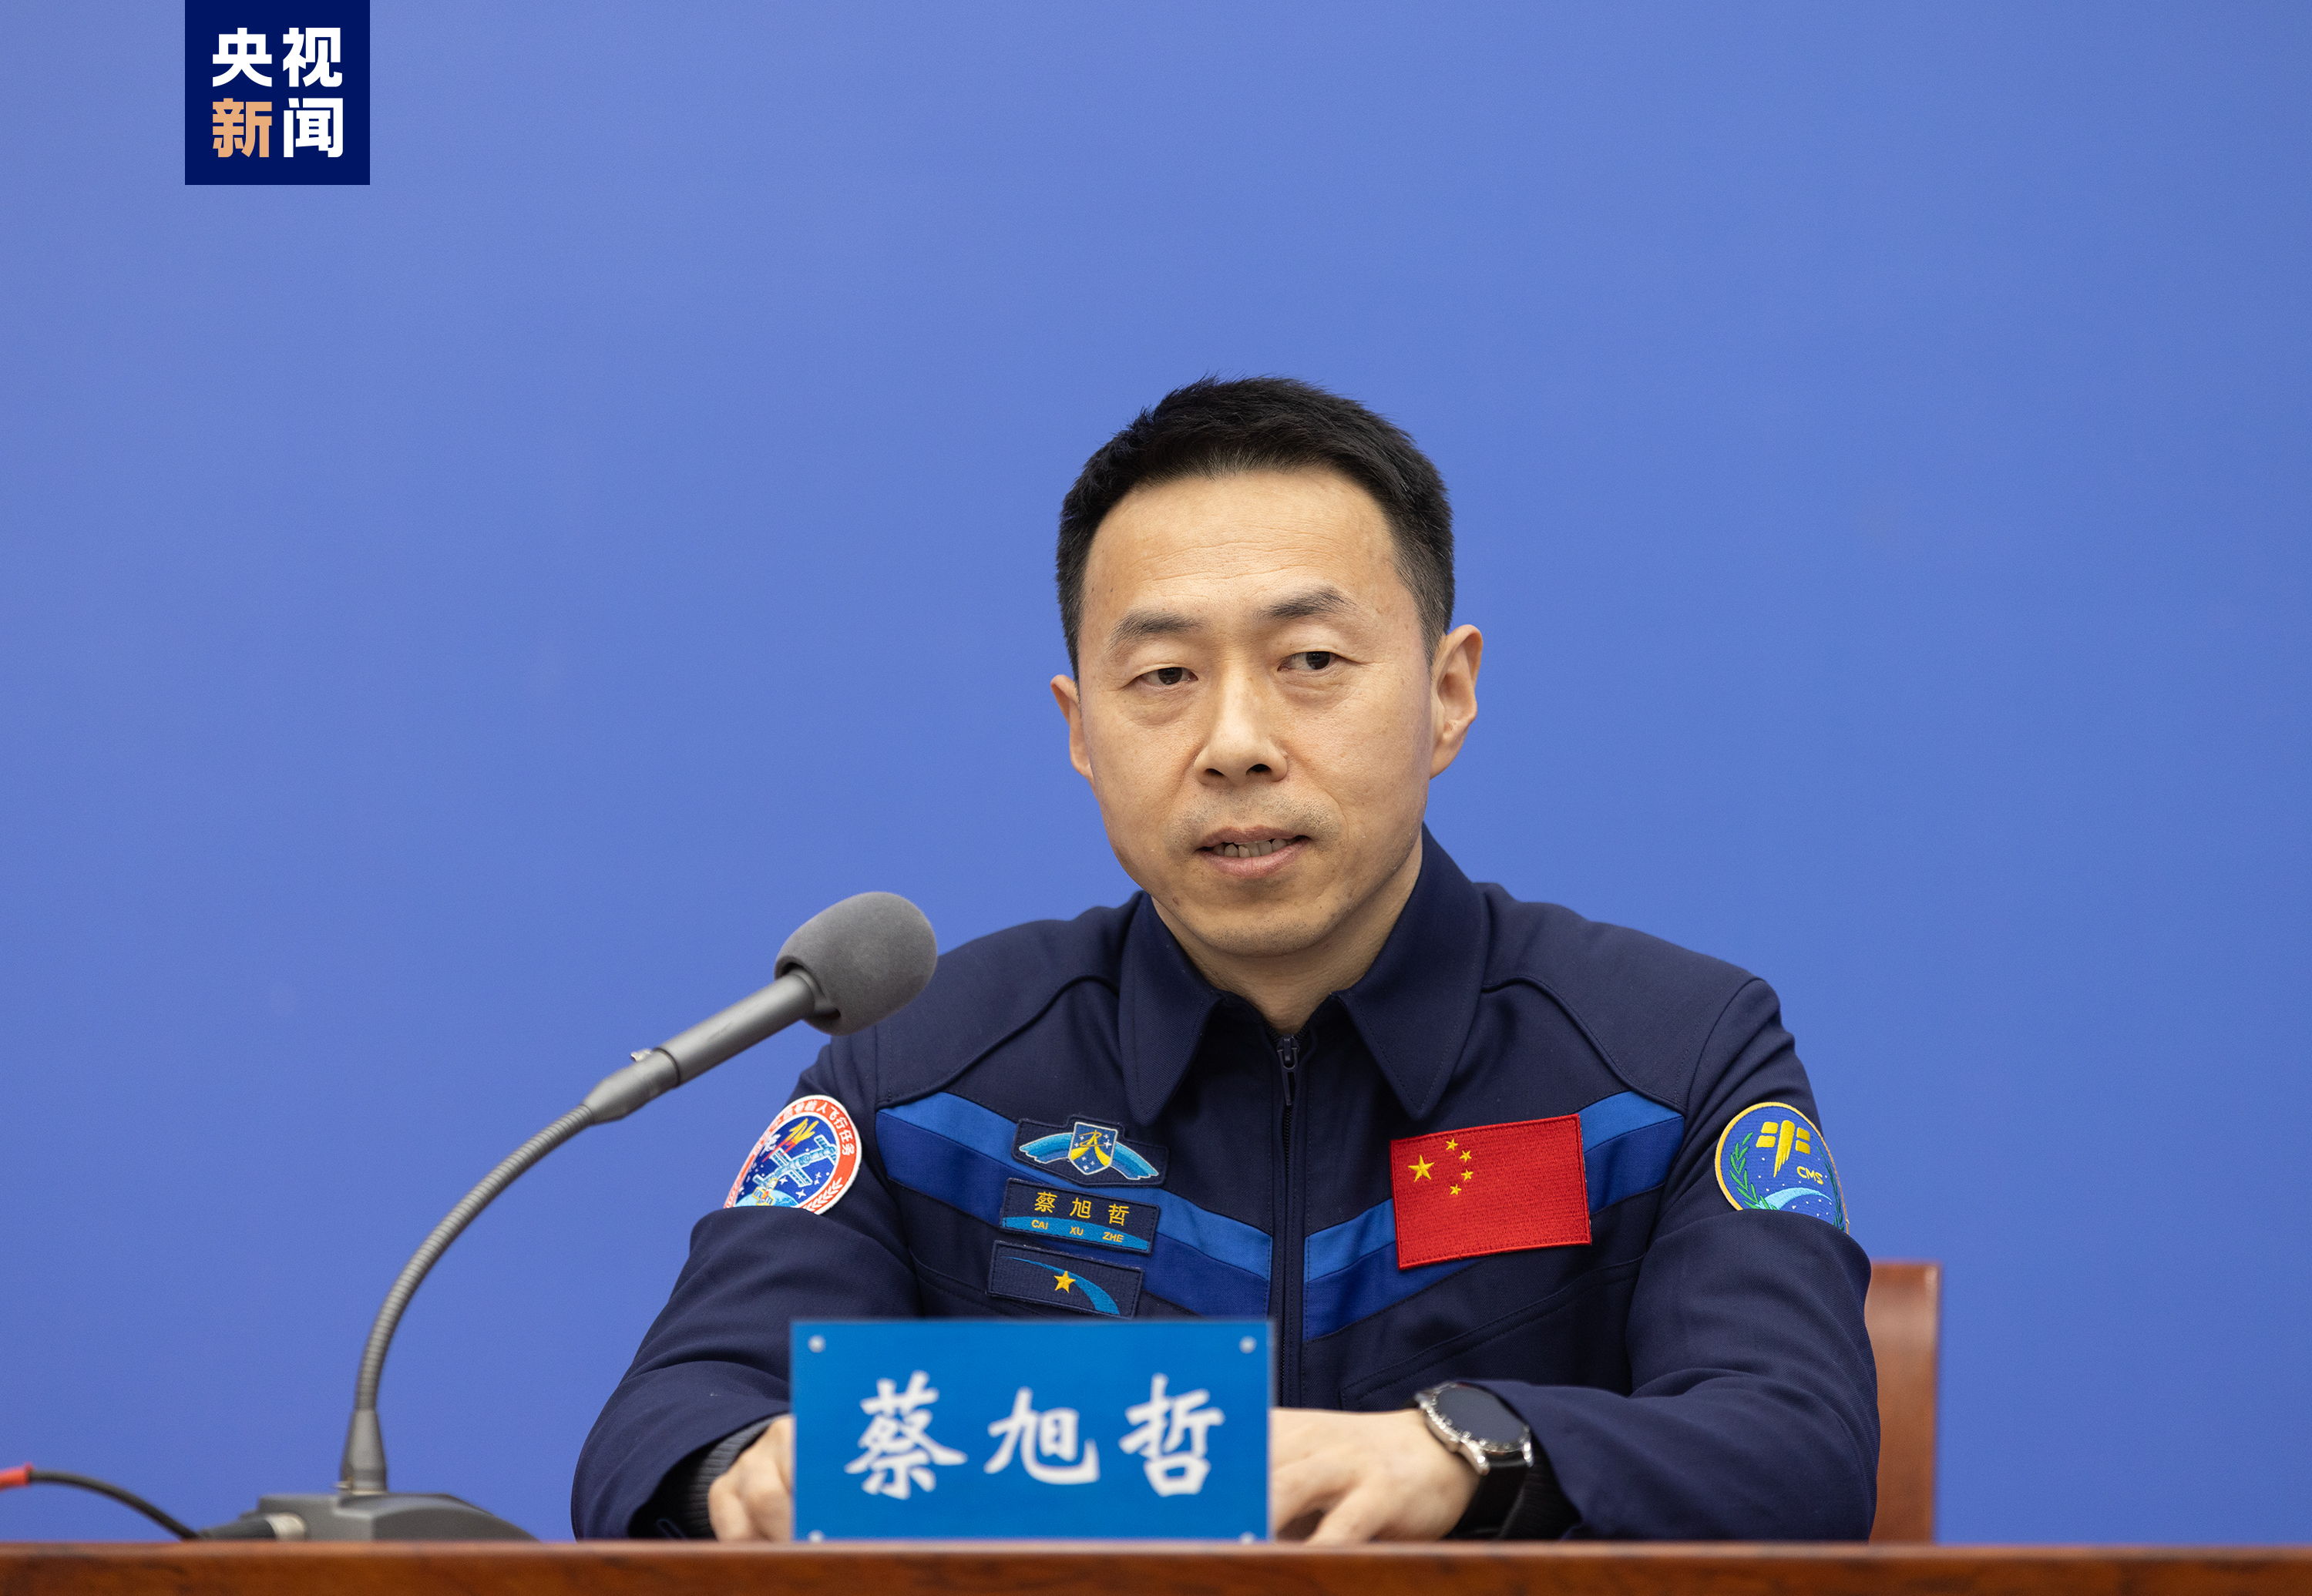 神舟十四号航天员乘组与记者见面会在北京航天城举行